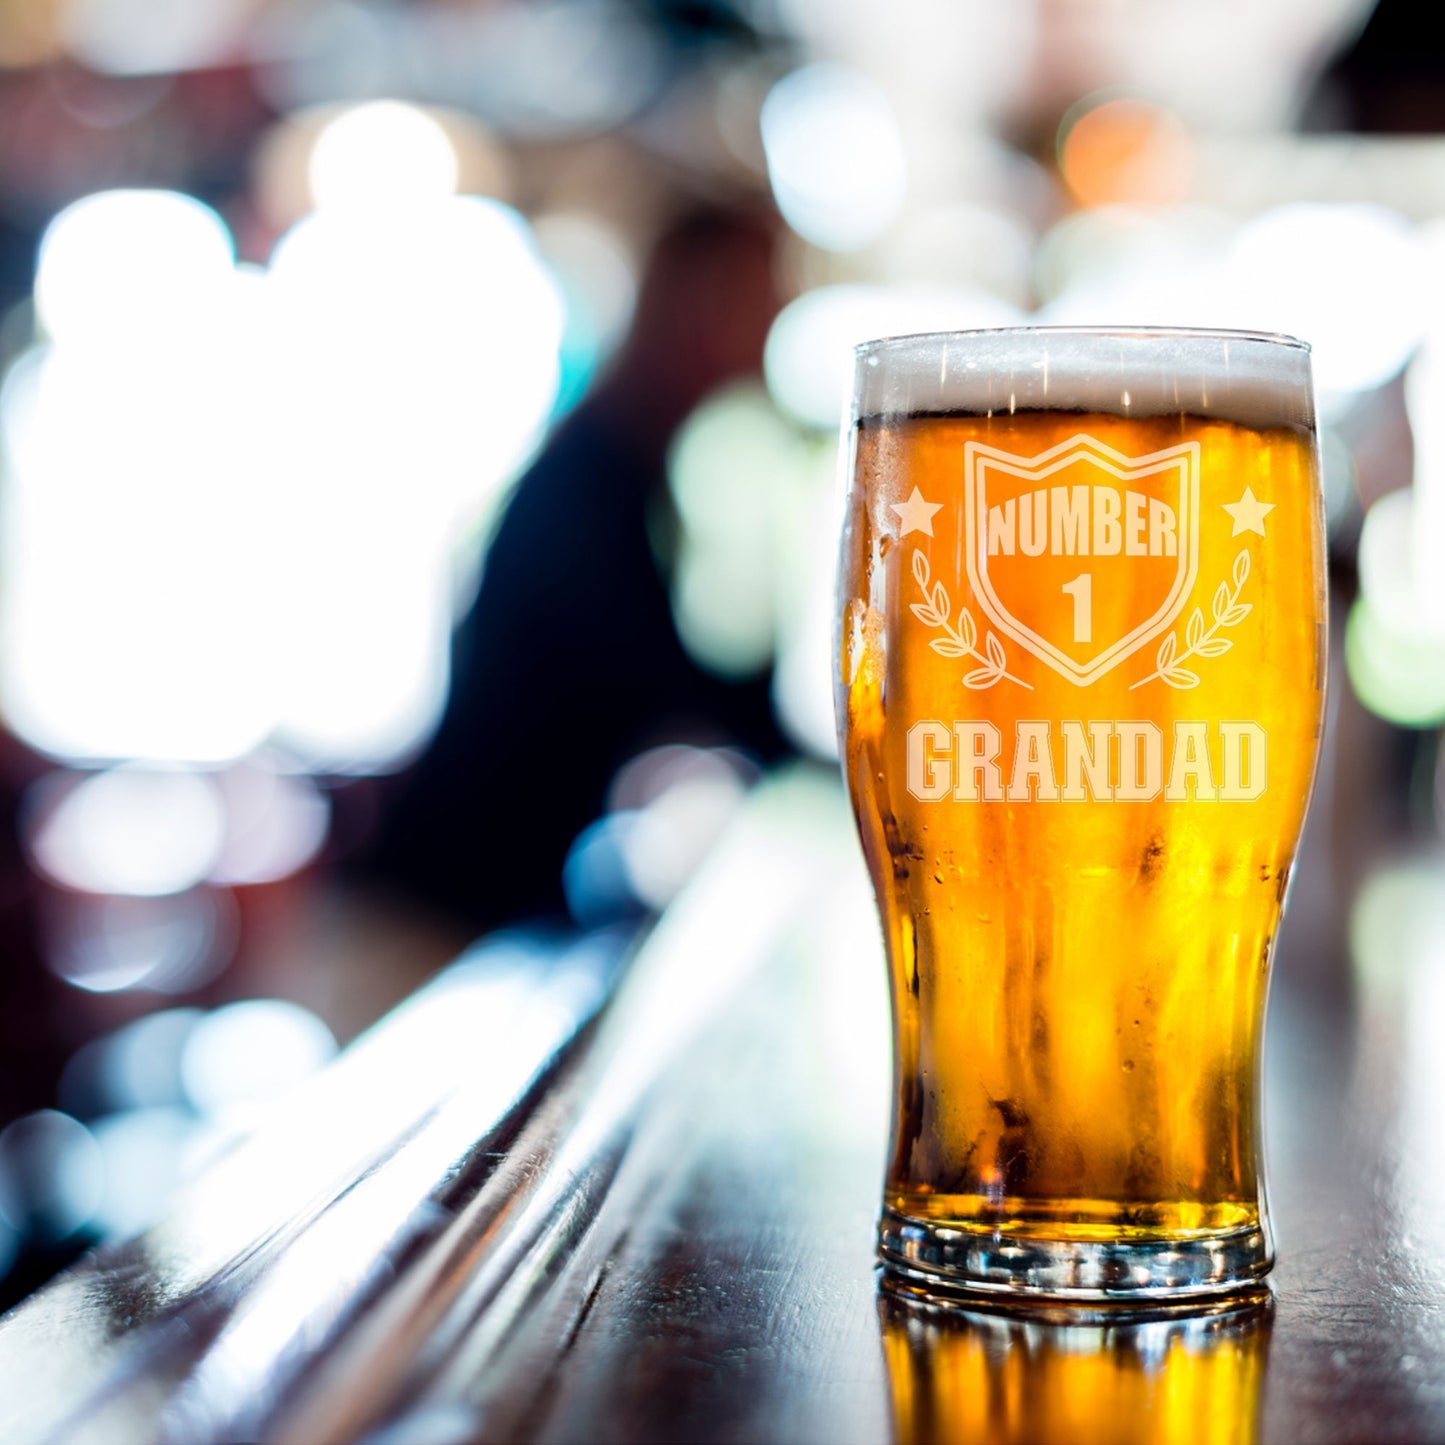 Number 1 Grandad Engraved Beer Pint Glass  - Always Looking Good -   